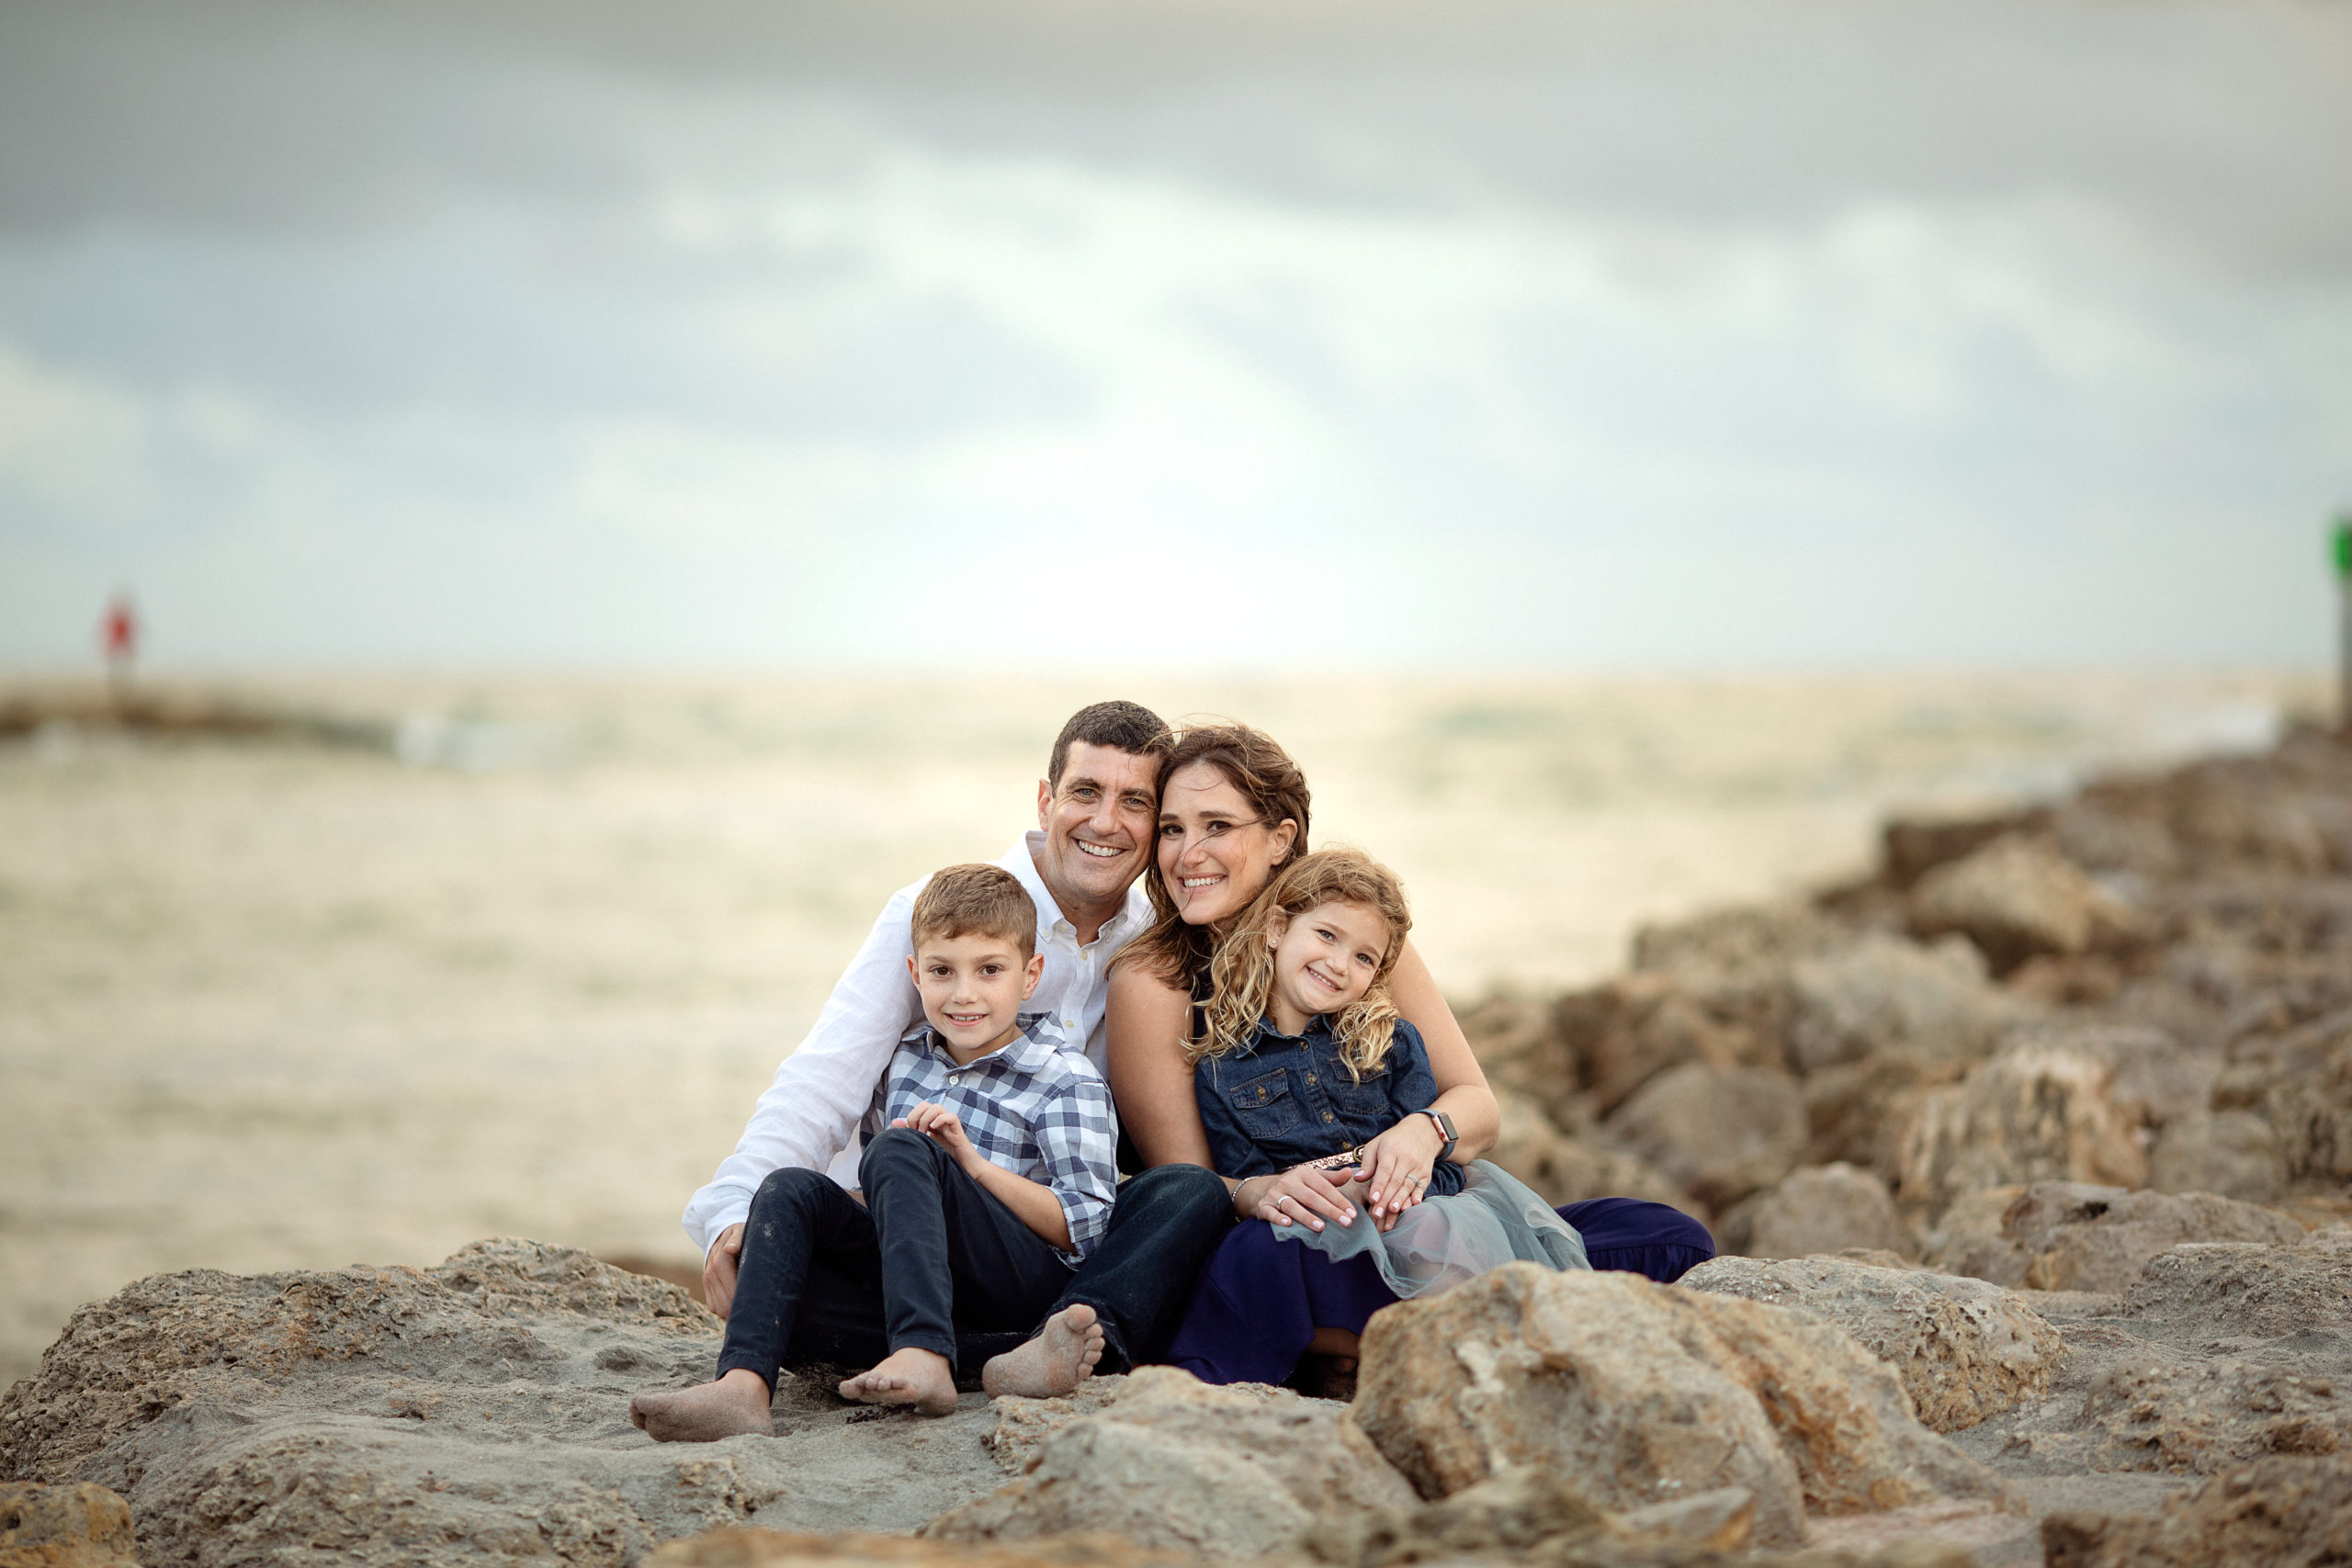 The Goldfarb Family | Boca Raton Family Photographer